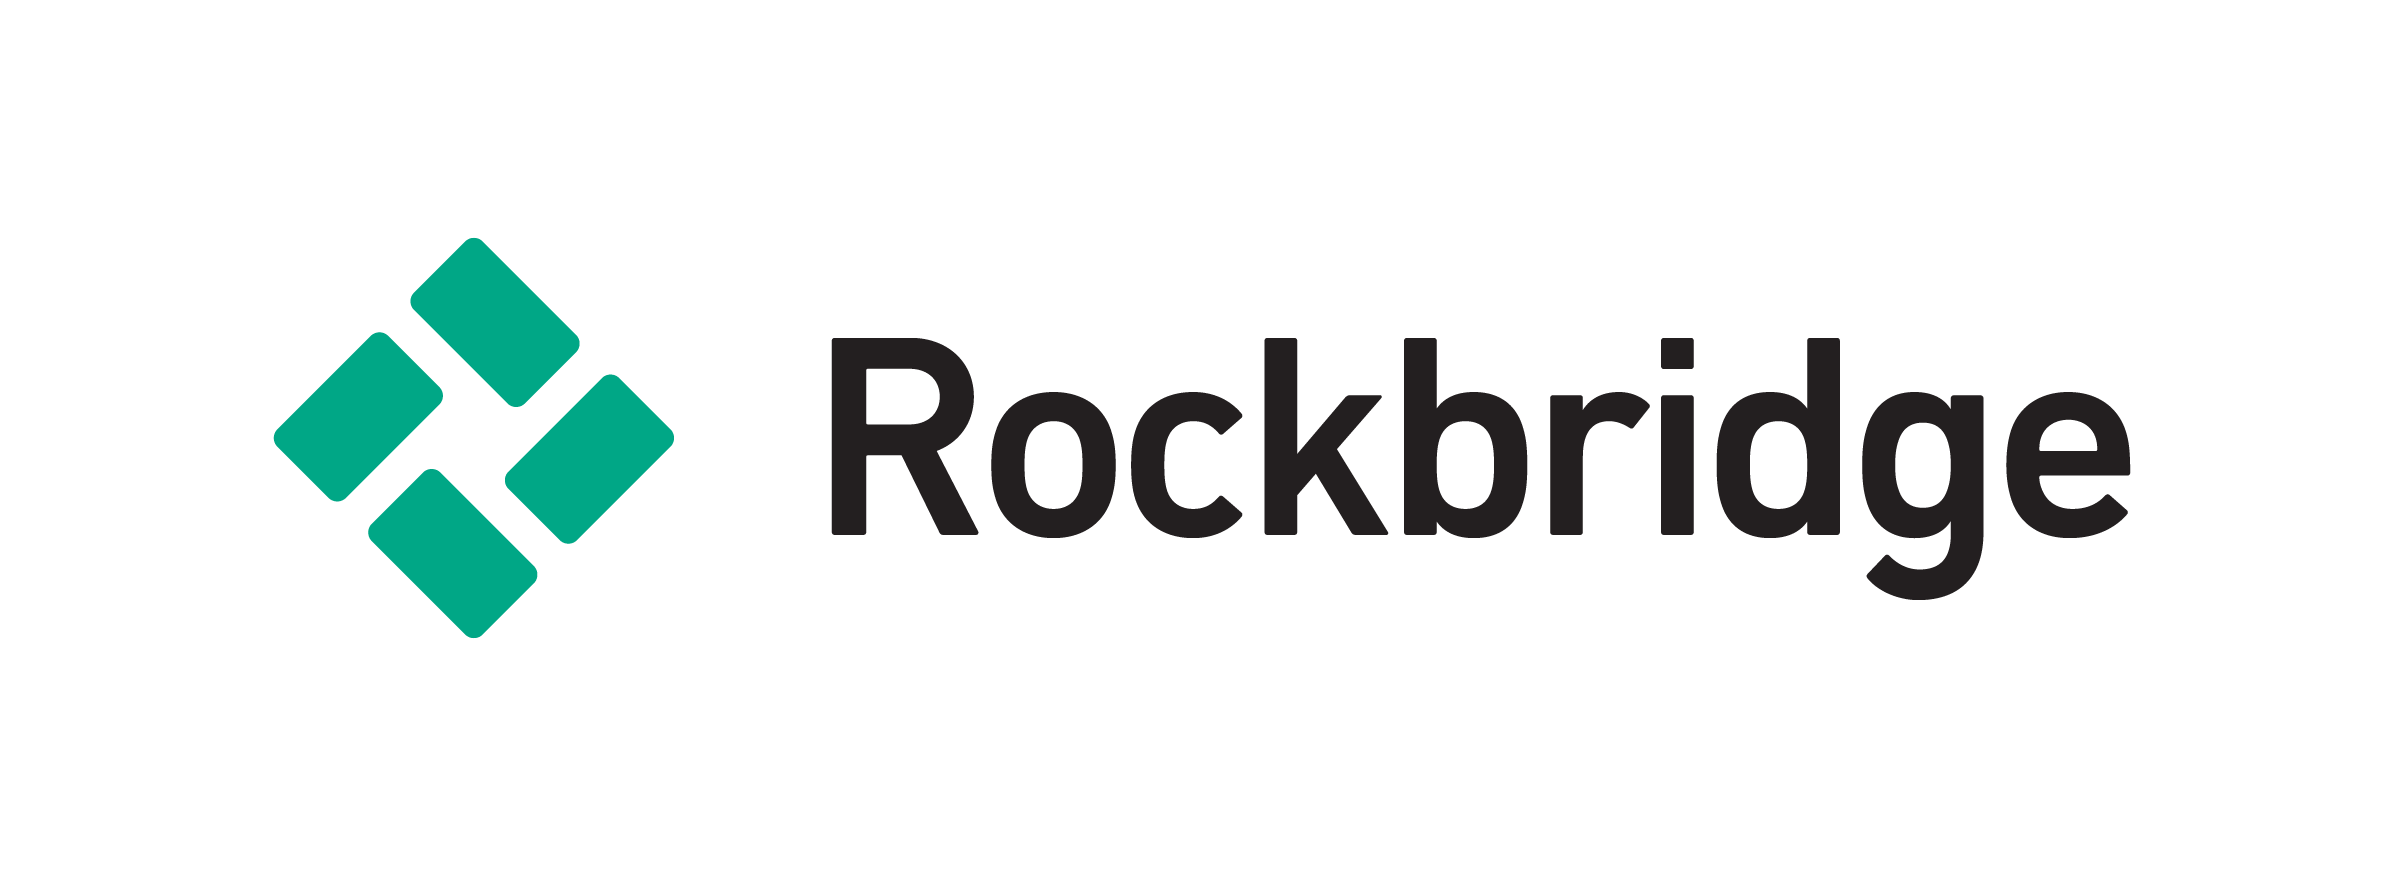 Fundusze Rockbridge TFI są już dostępne dla naszych klientów.